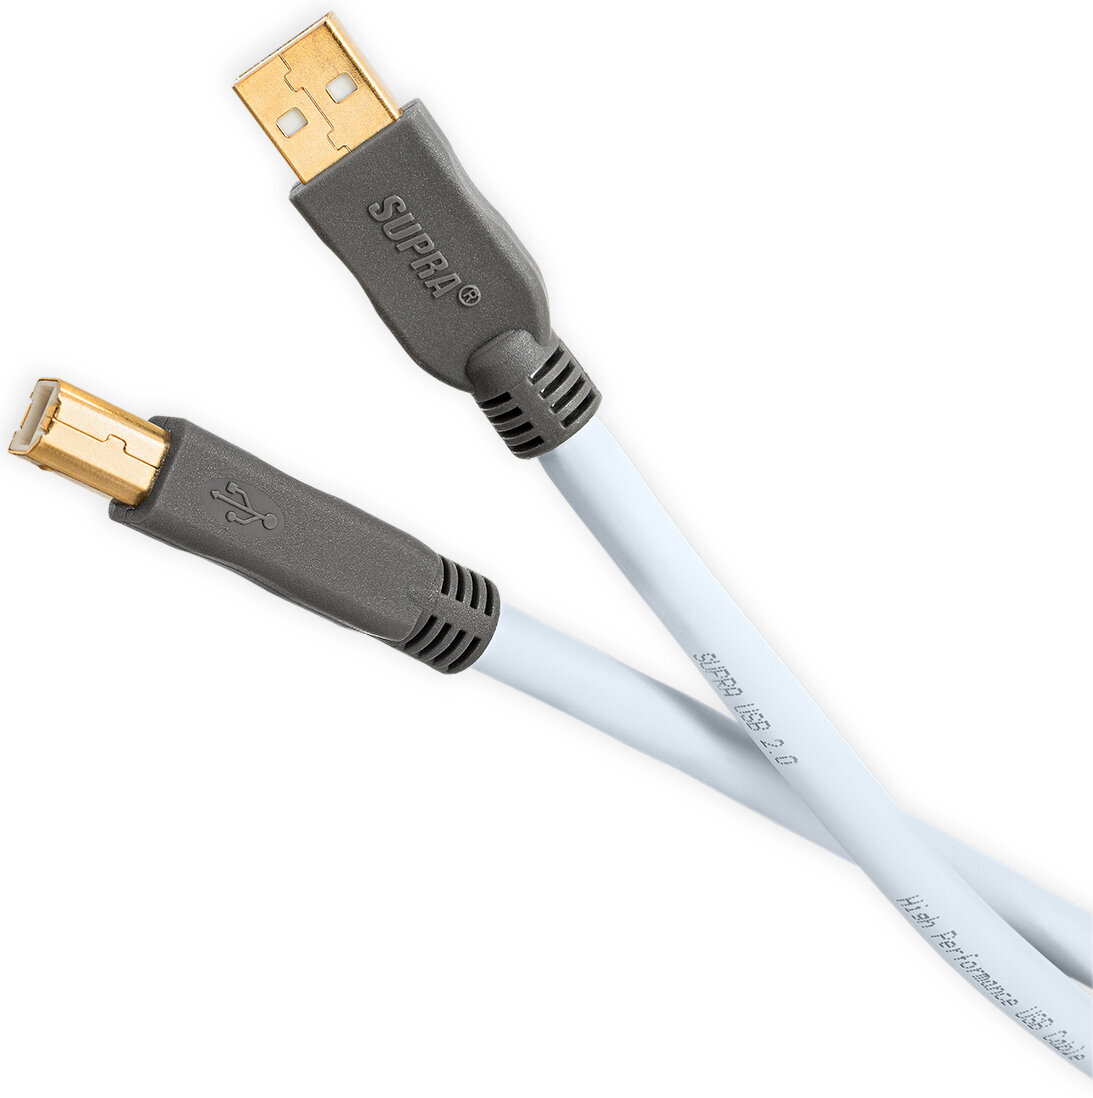 Câble USB Salut-Fi SUPRA Cables USB 2.0 Cable 1 m Bleu Câble USB Salut-Fi